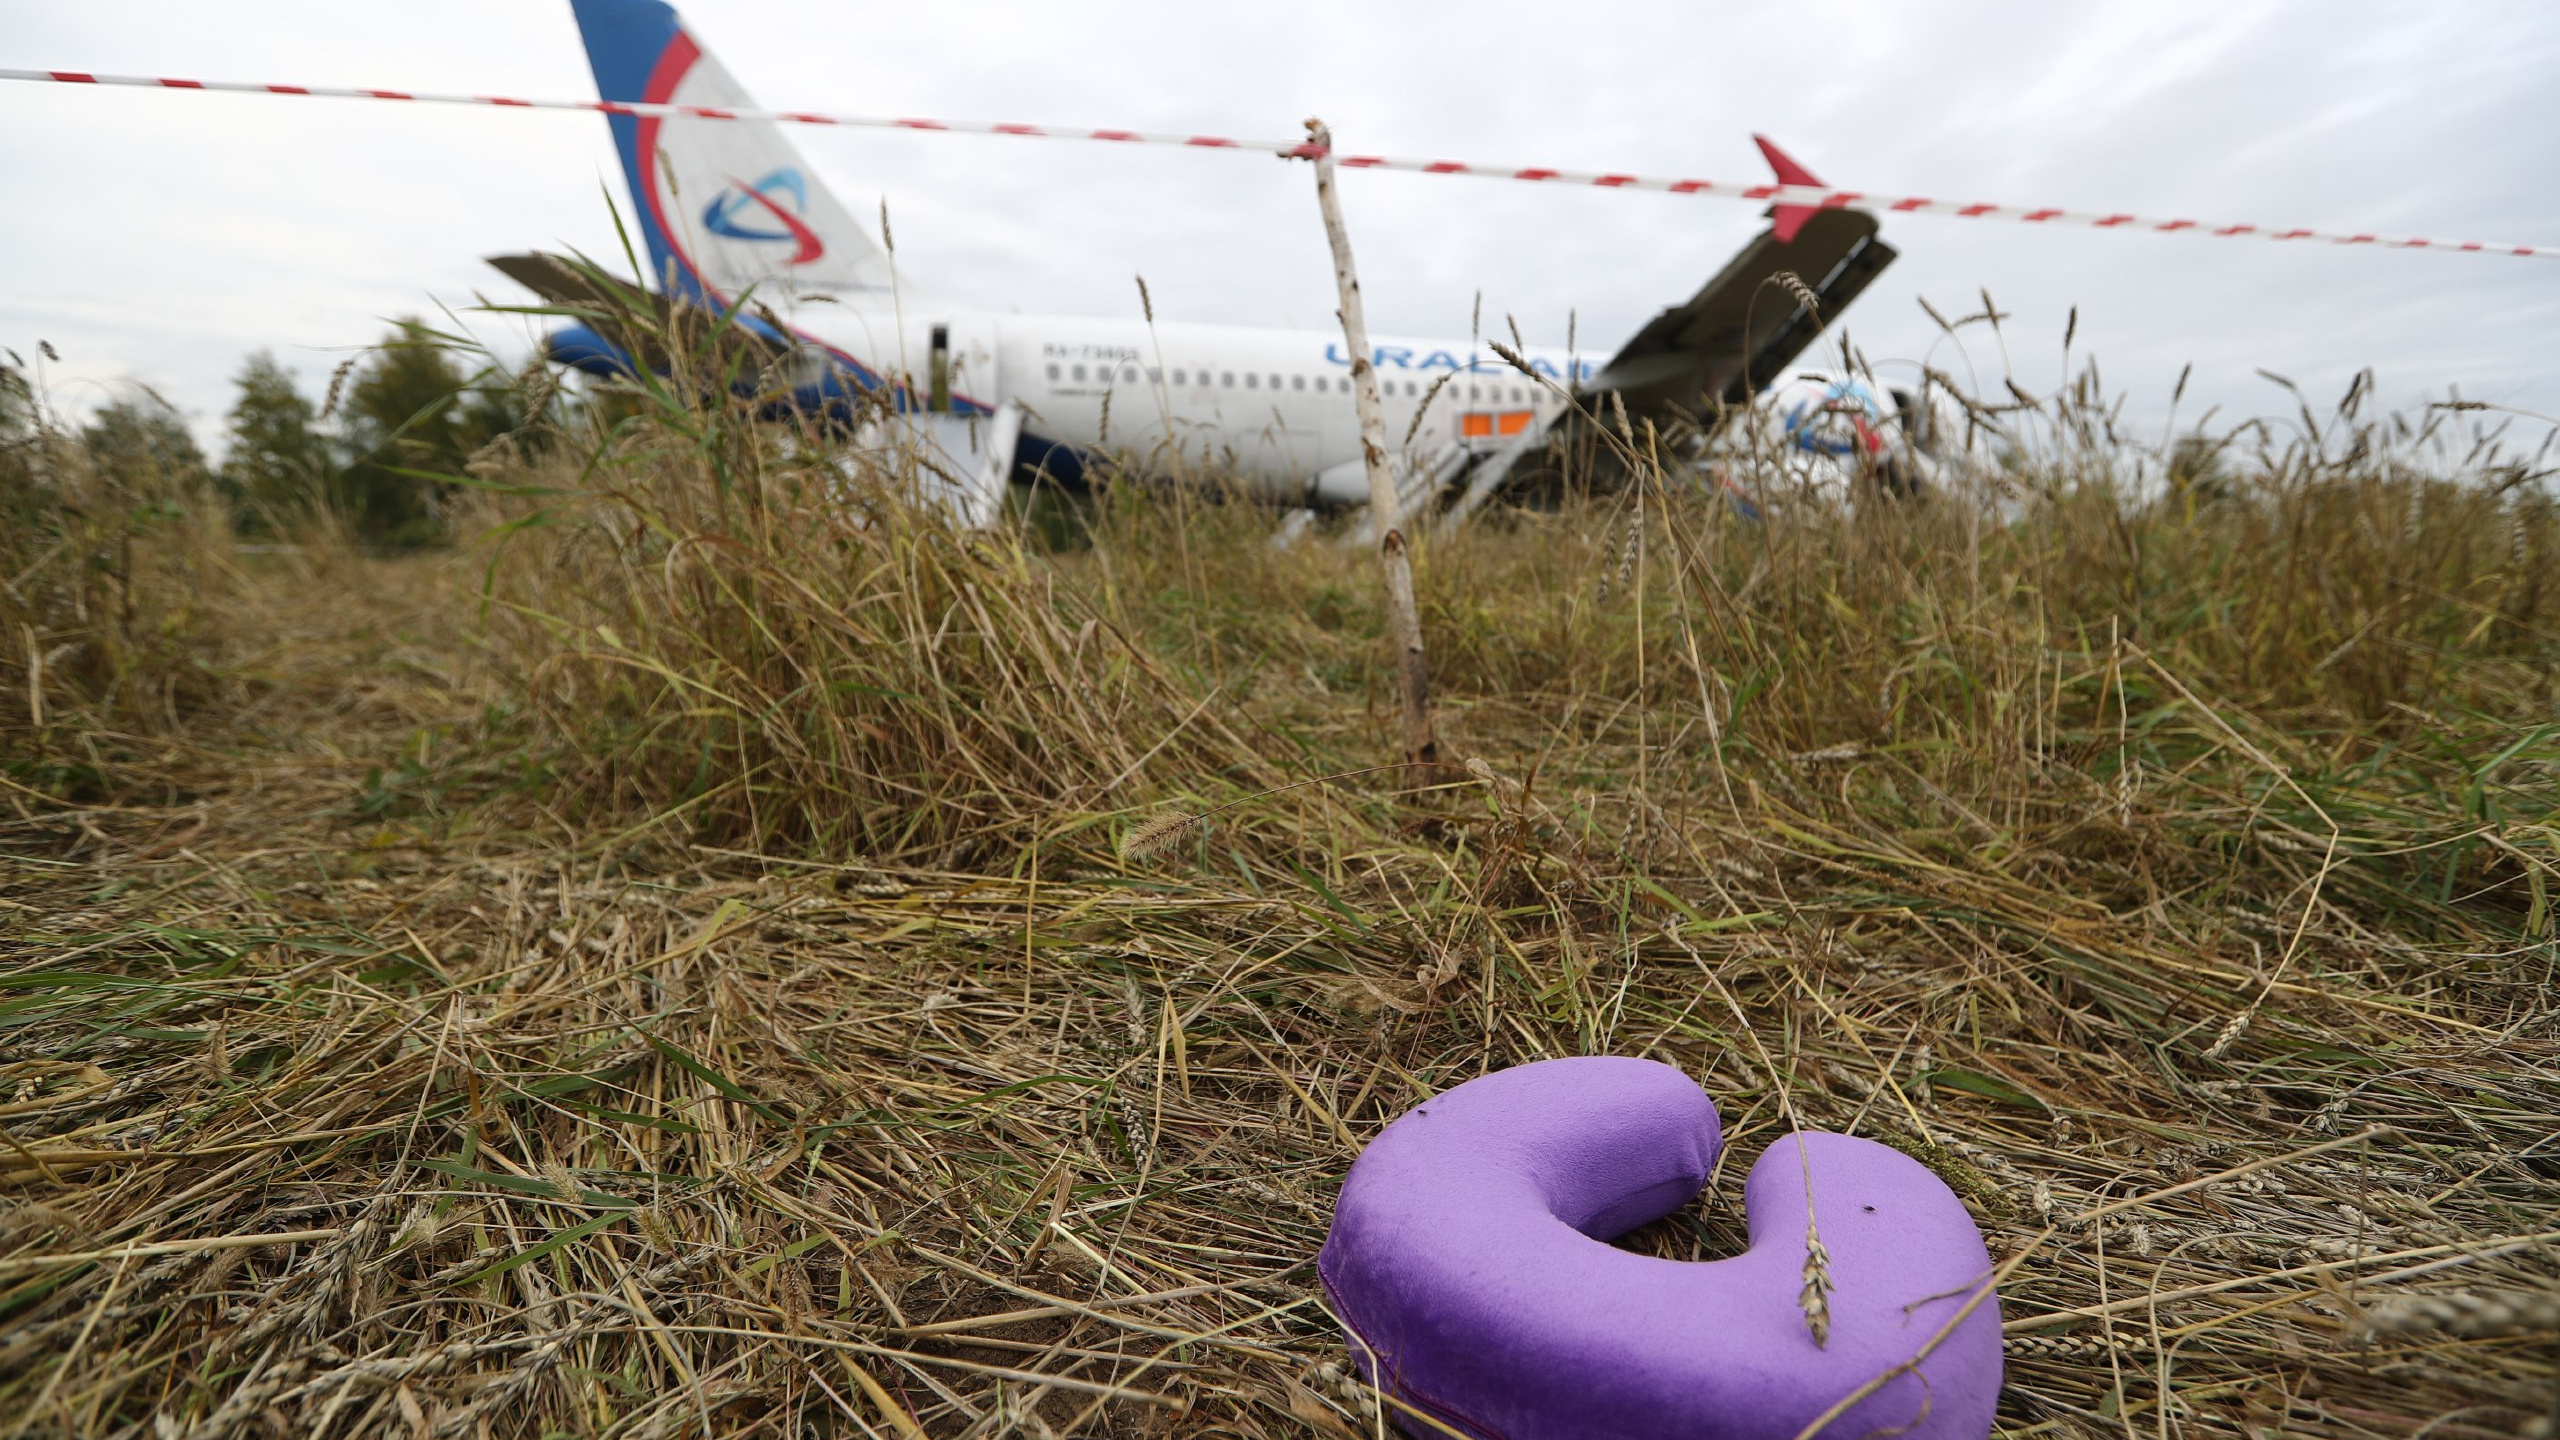 «Взлетная полоса — это дорого»: севший в новосибирском поле самолет могут разобрать и отправить в утиль